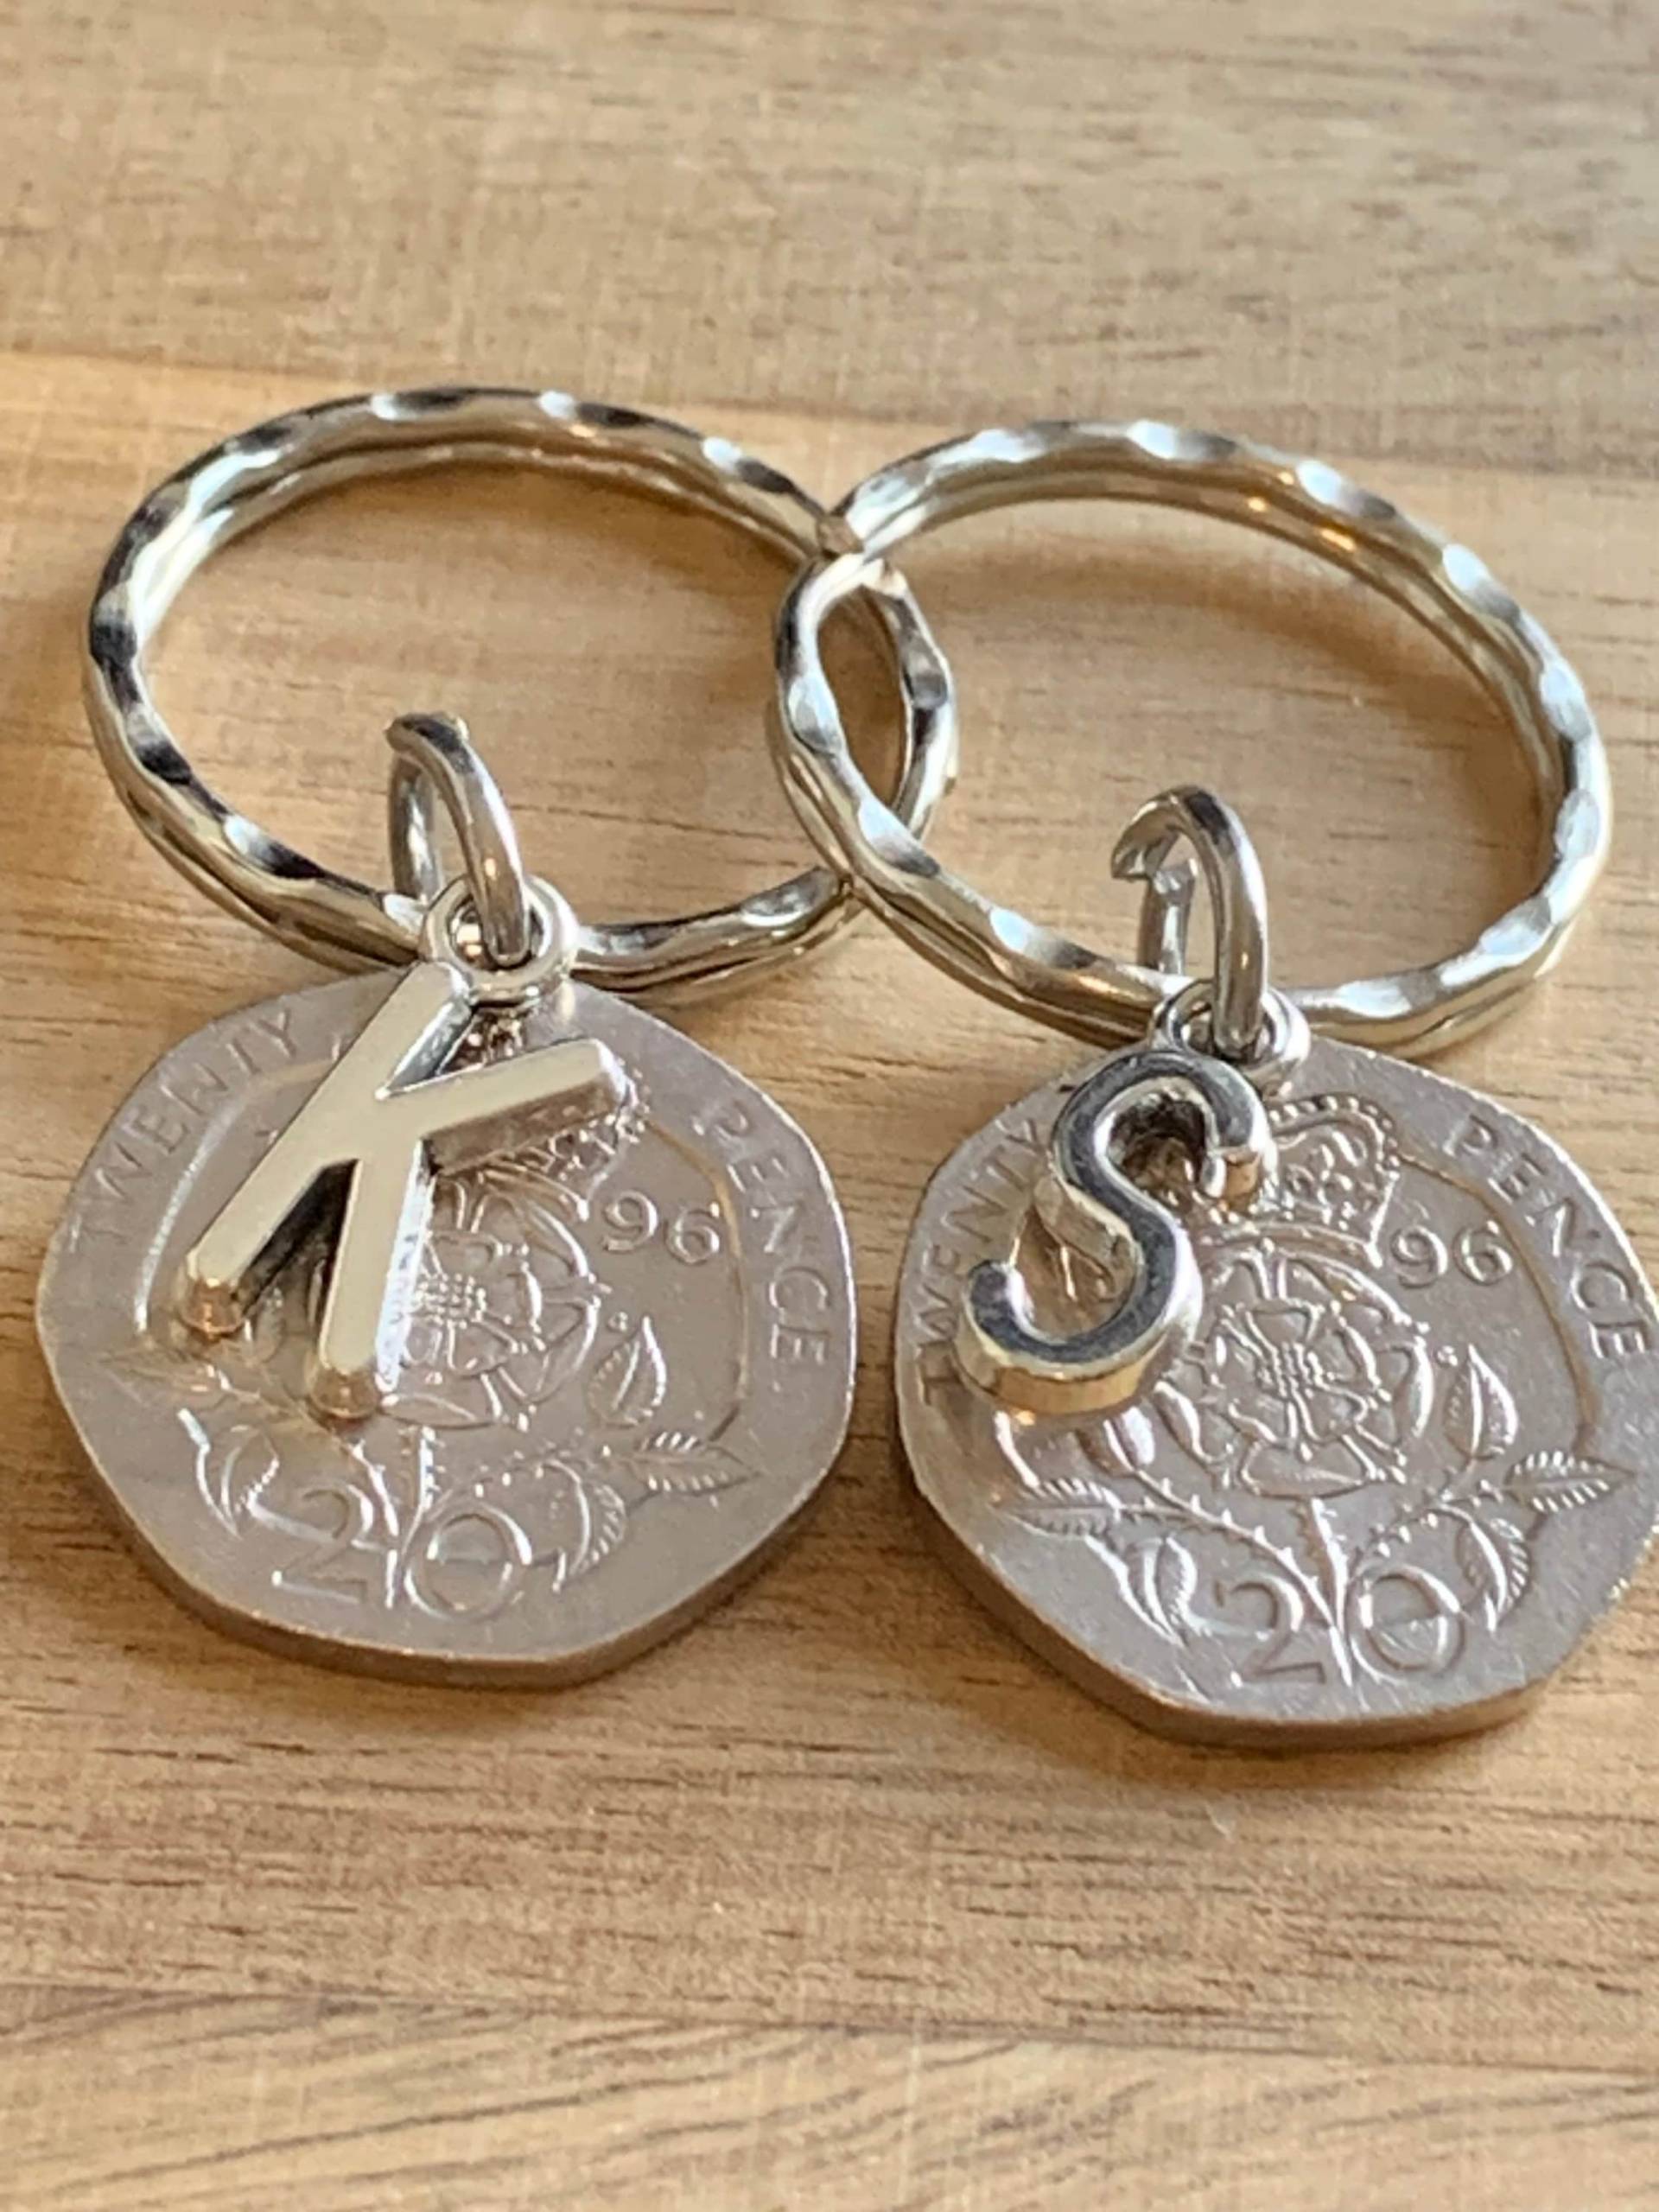 28. Jahrestag Geschenk Für Paare Personalisierte Polierte 1996 Münze Schlüsselanhänger Andenken - Jahrestagsgeschenk in Geschenkbeutel Wählen von EmmasgiftshopStore